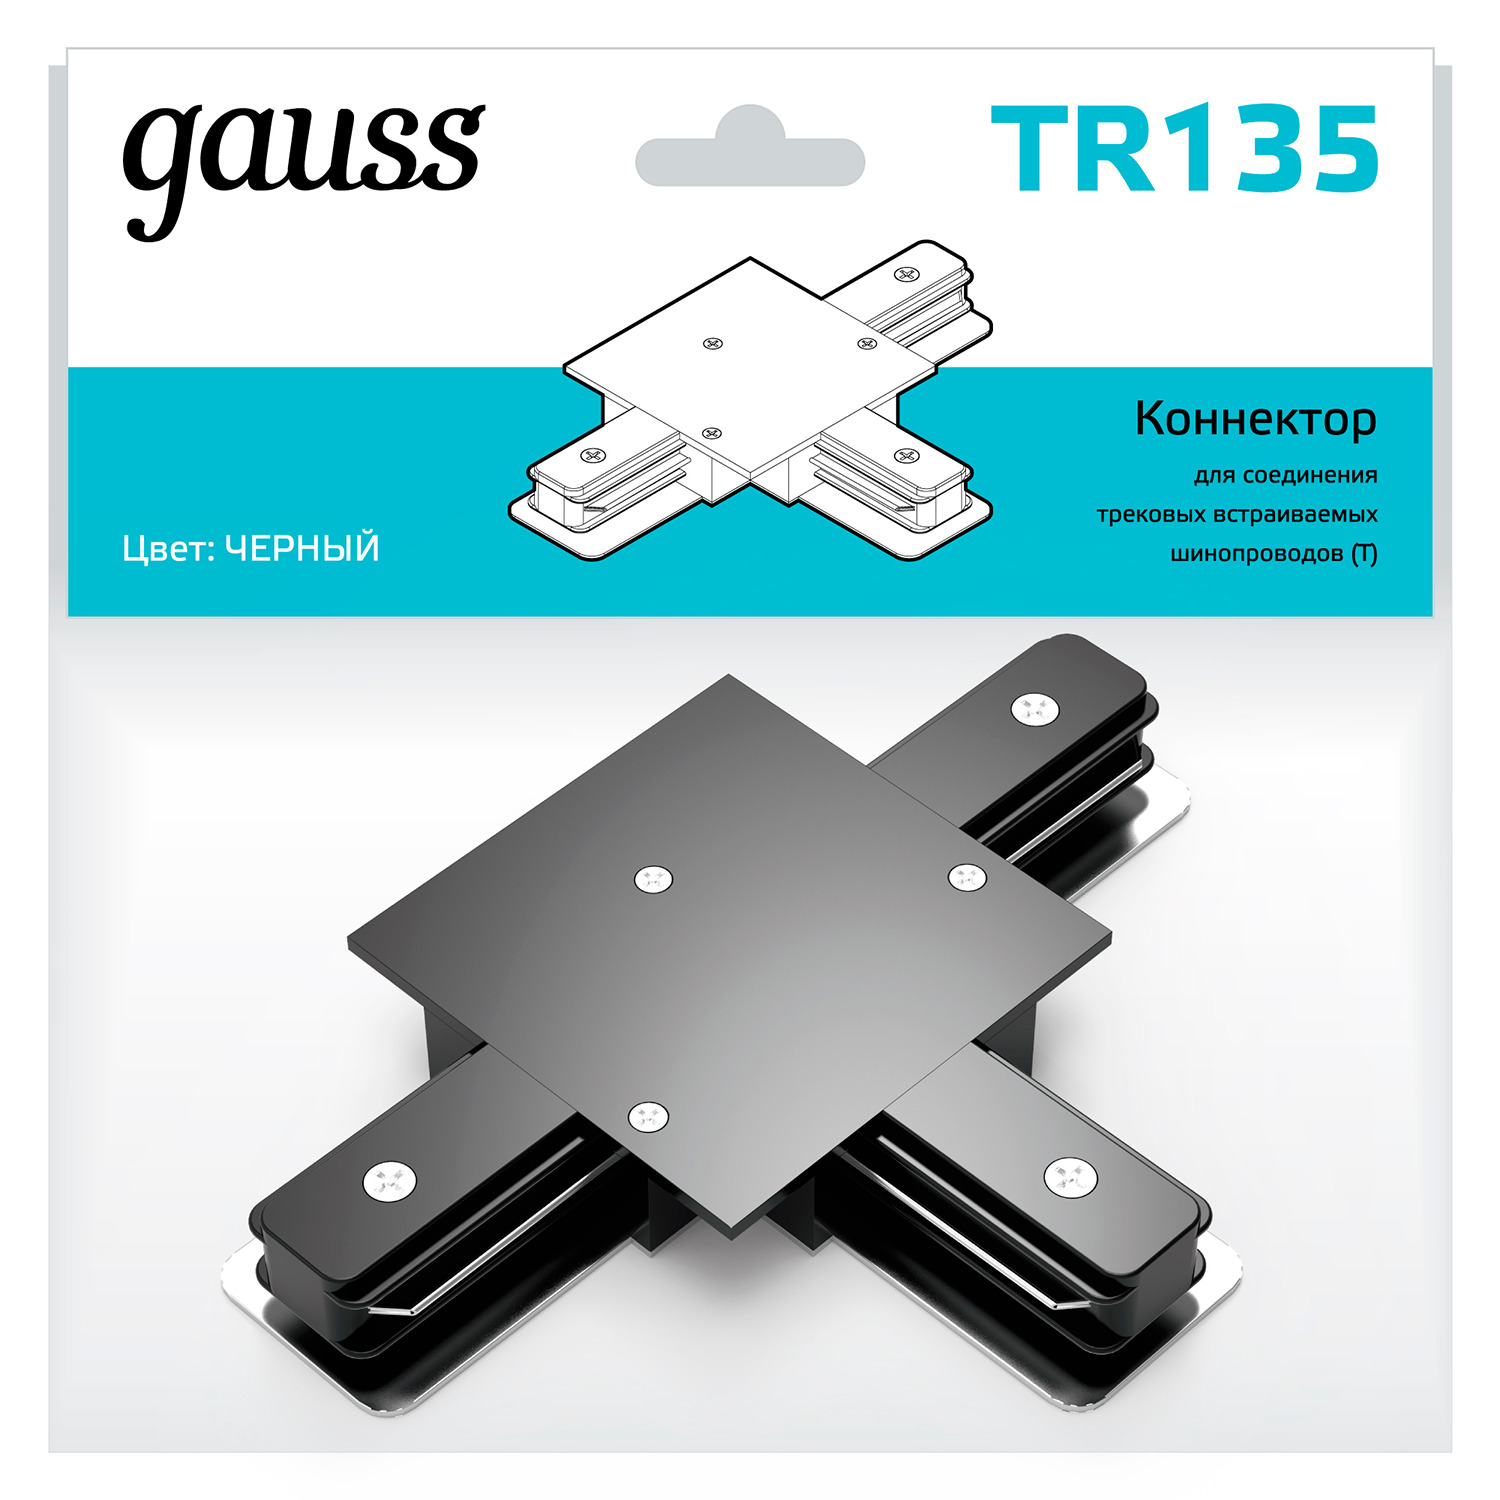 Коннектор Gauss для встраиваемых трековых шинопроводов (T) черный коннектор gauss для встраиваемых трековых шинопроводов